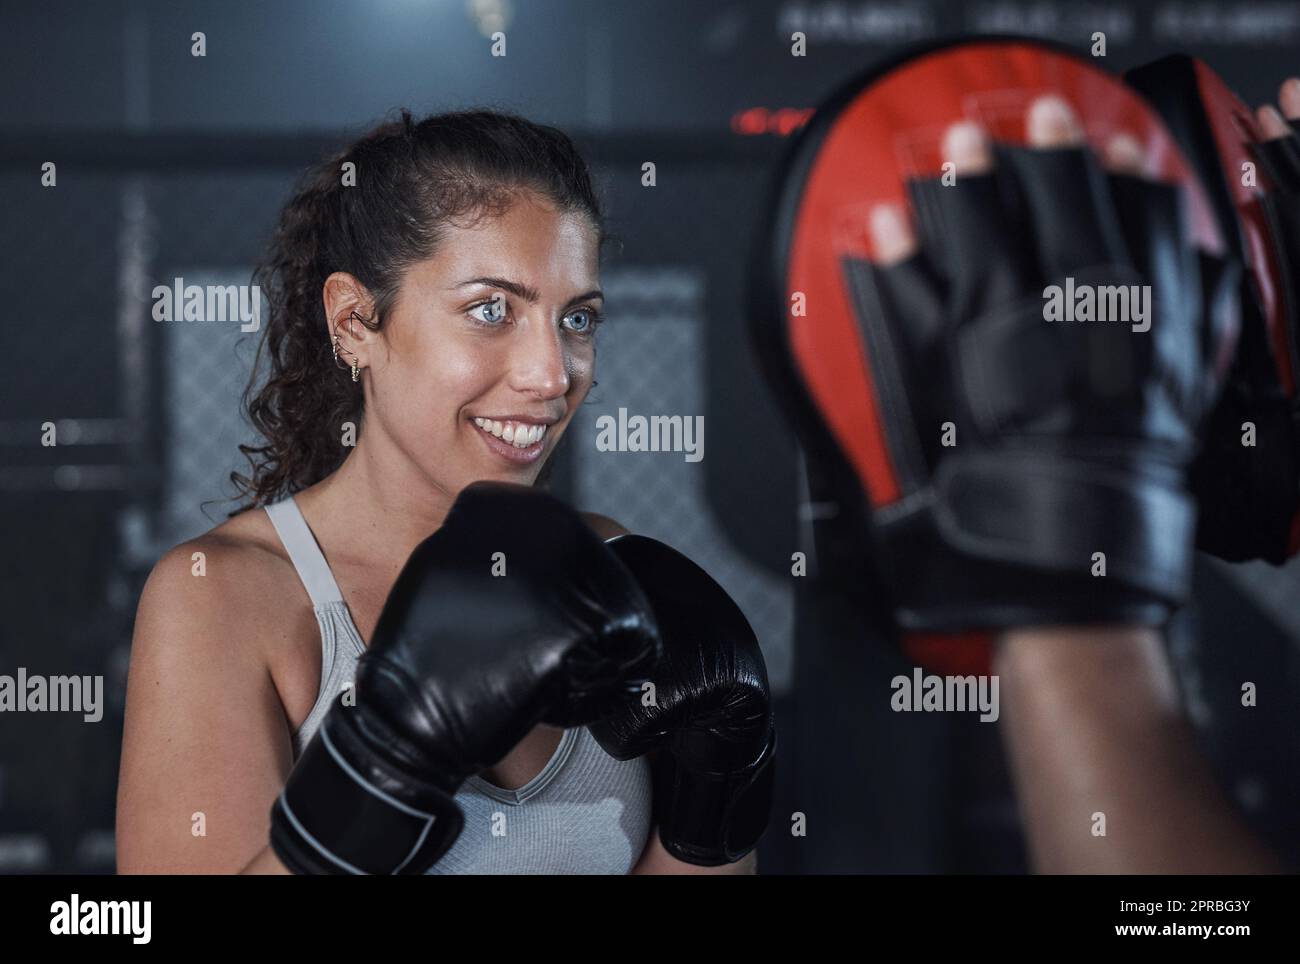 Une excellente façon d'améliorer votre endurance. Une jeune femme pratiquant avec son entraîneur dans une salle de boxe. Banque D'Images